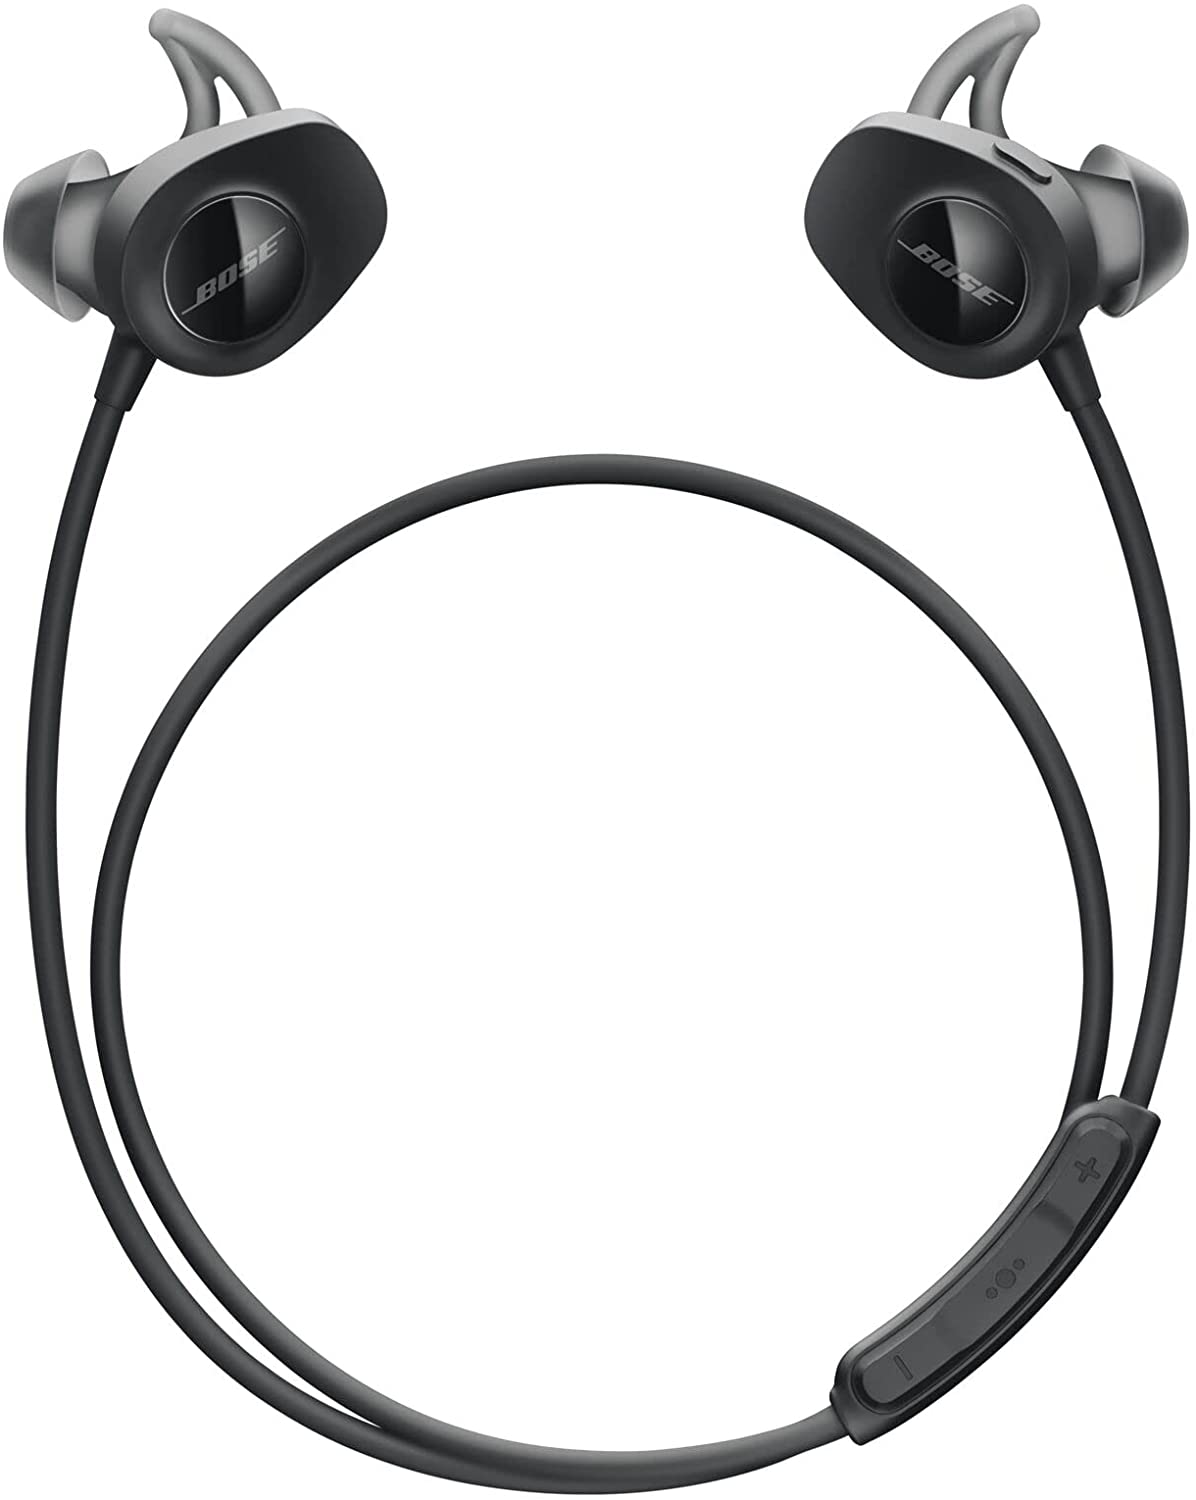 Bon plan : les écouteurs sans fil Bose SoundSport © Cdiscount